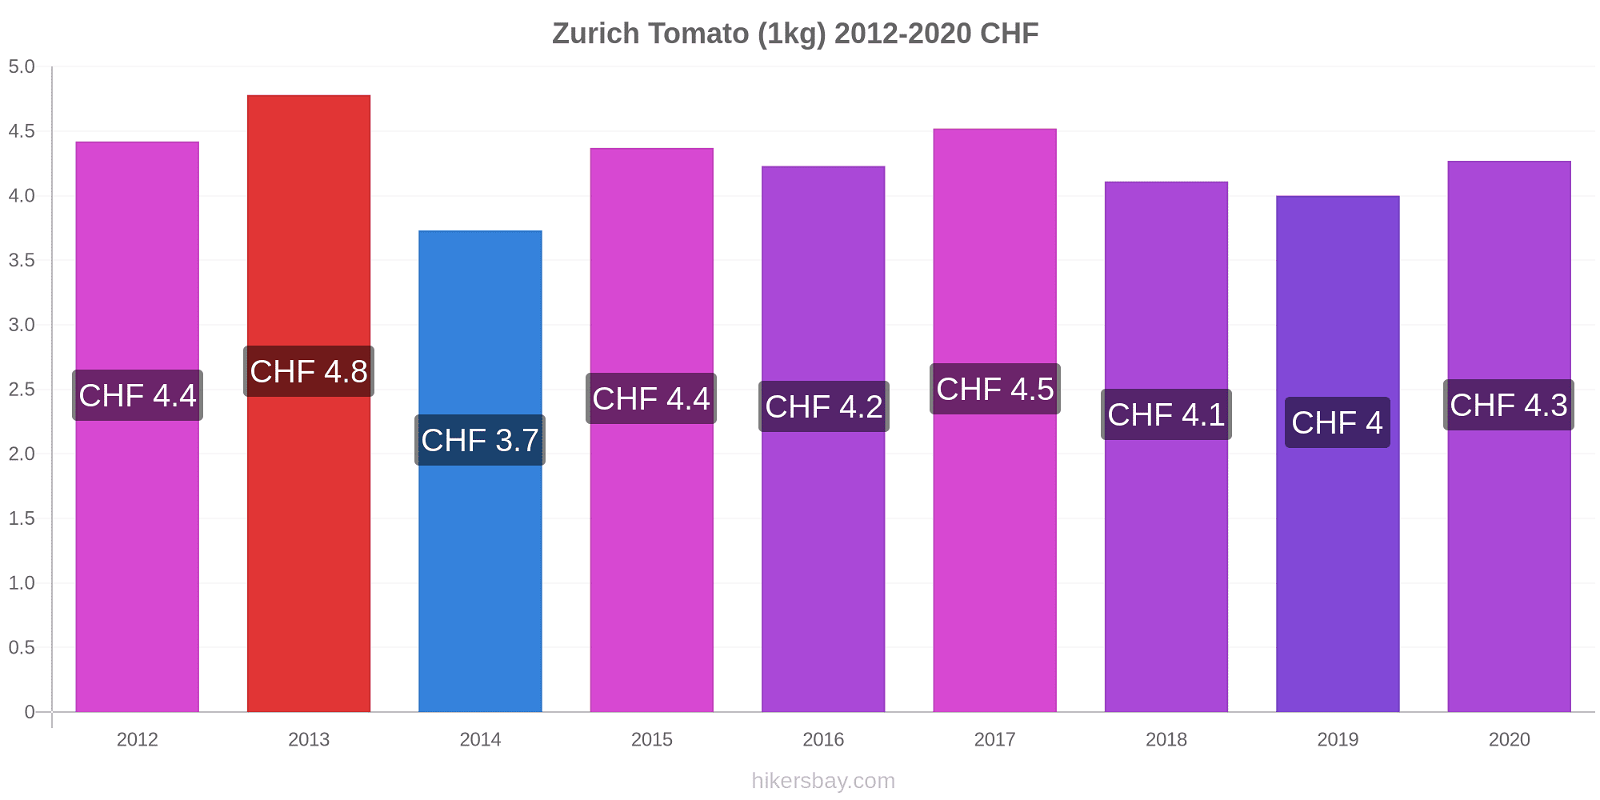 Zurich price changes Tomato (1kg) hikersbay.com